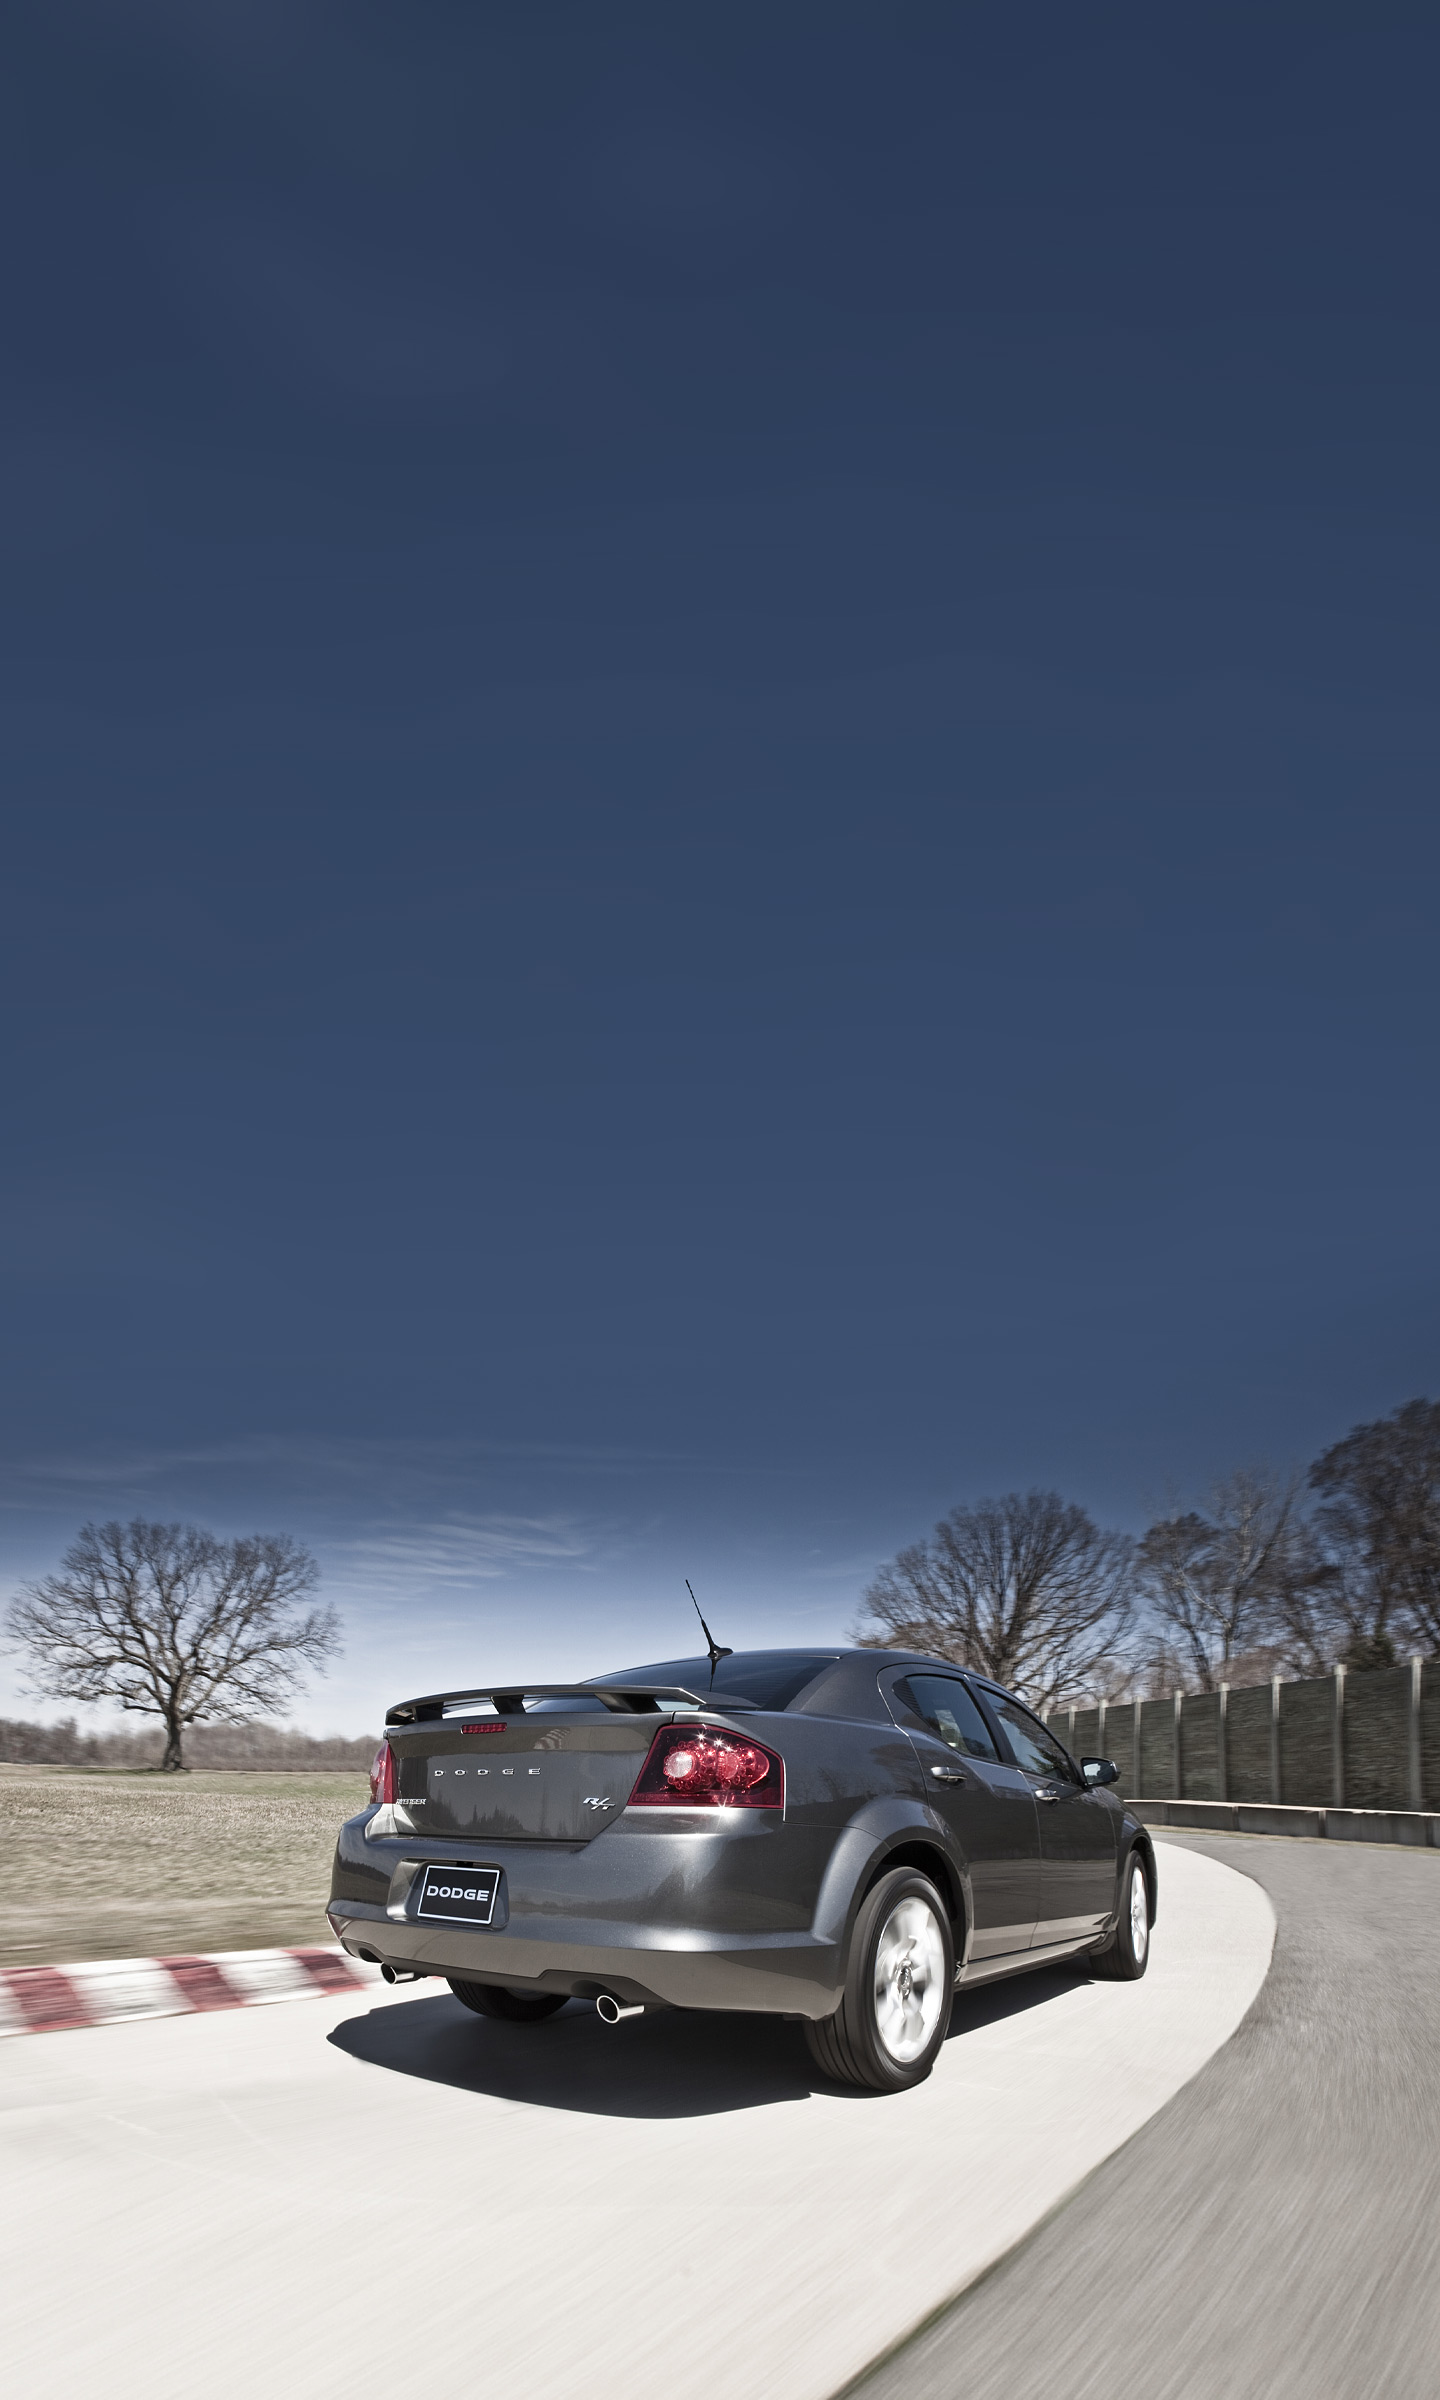  2012 Dodge Avenger R/T Wallpaper.